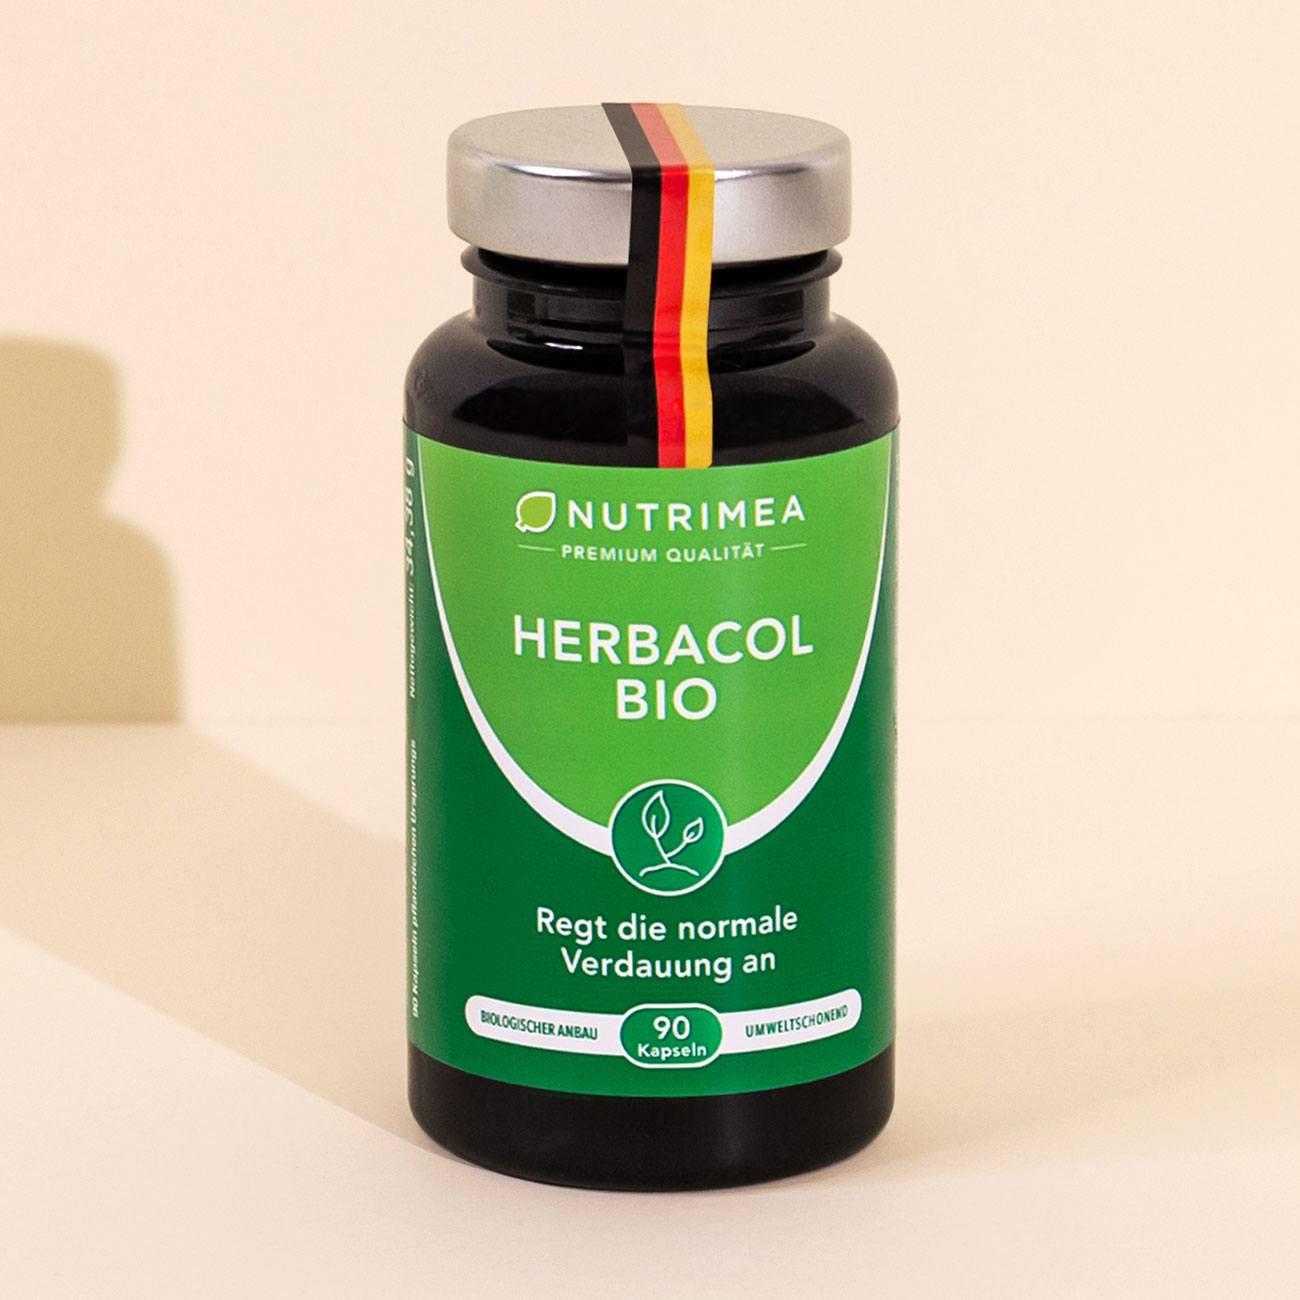 Foto des Nahrungsergänzungsmittels Herbacol BIO